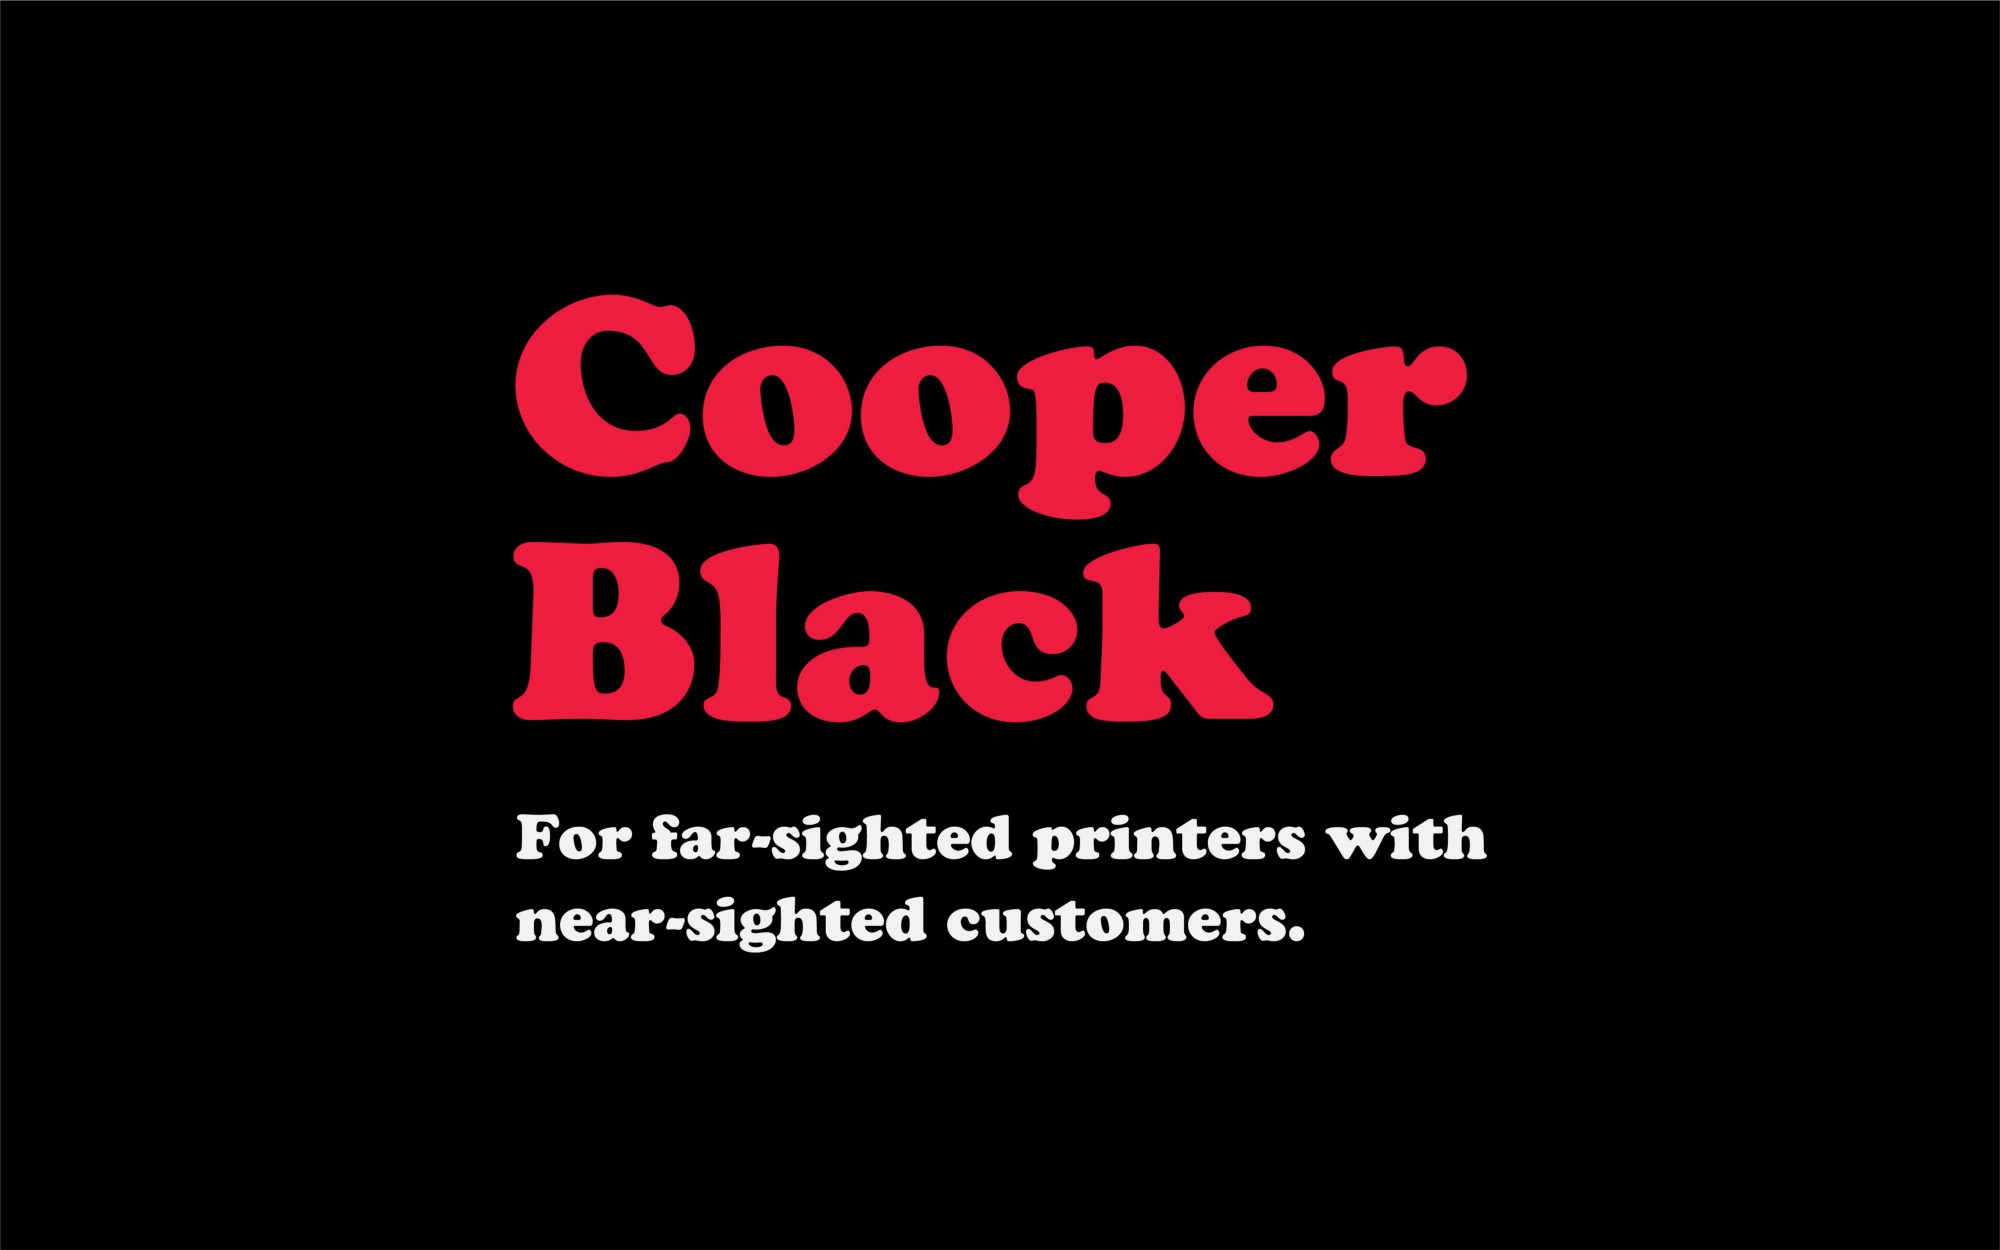 뚱뚱한 폰트: Cooper Black의 100년